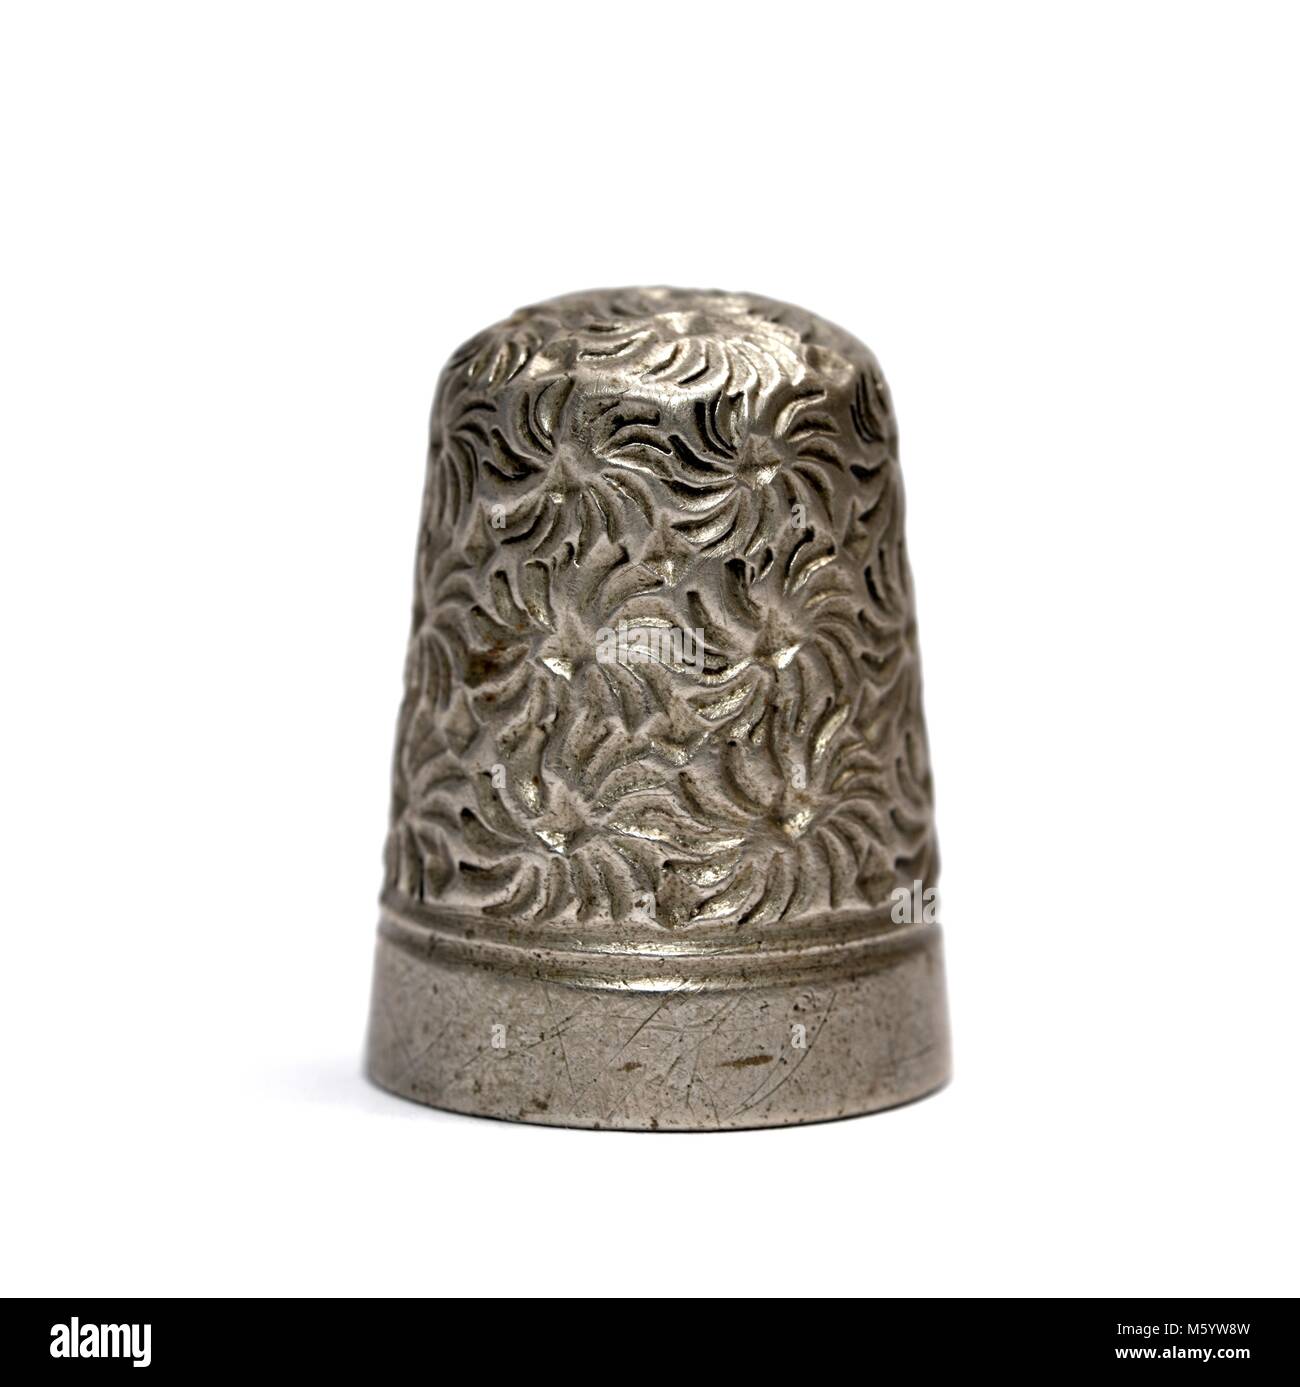 Metall nähen Fingerhut auf einem Finger weißer Hintergrund Stockfoto